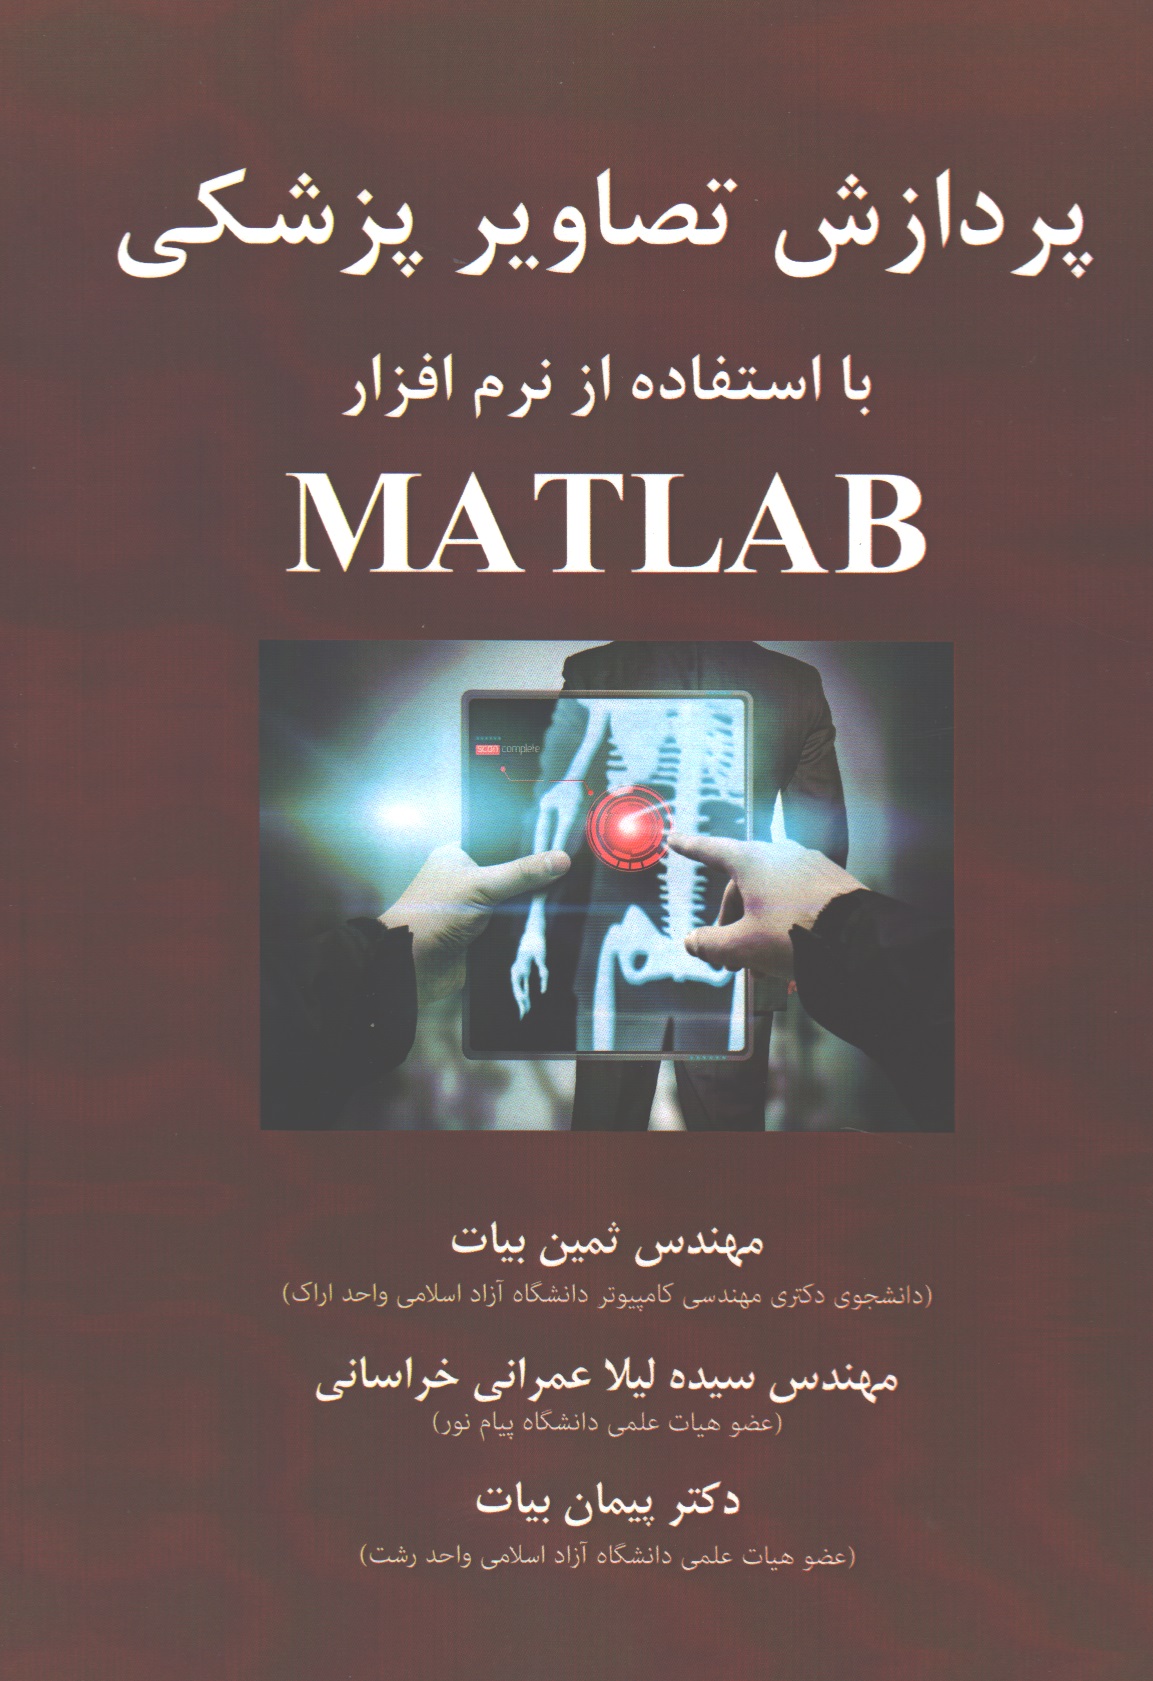 پردازش تصاویر پزشکی با استفاده از نرم افزار MATLAB